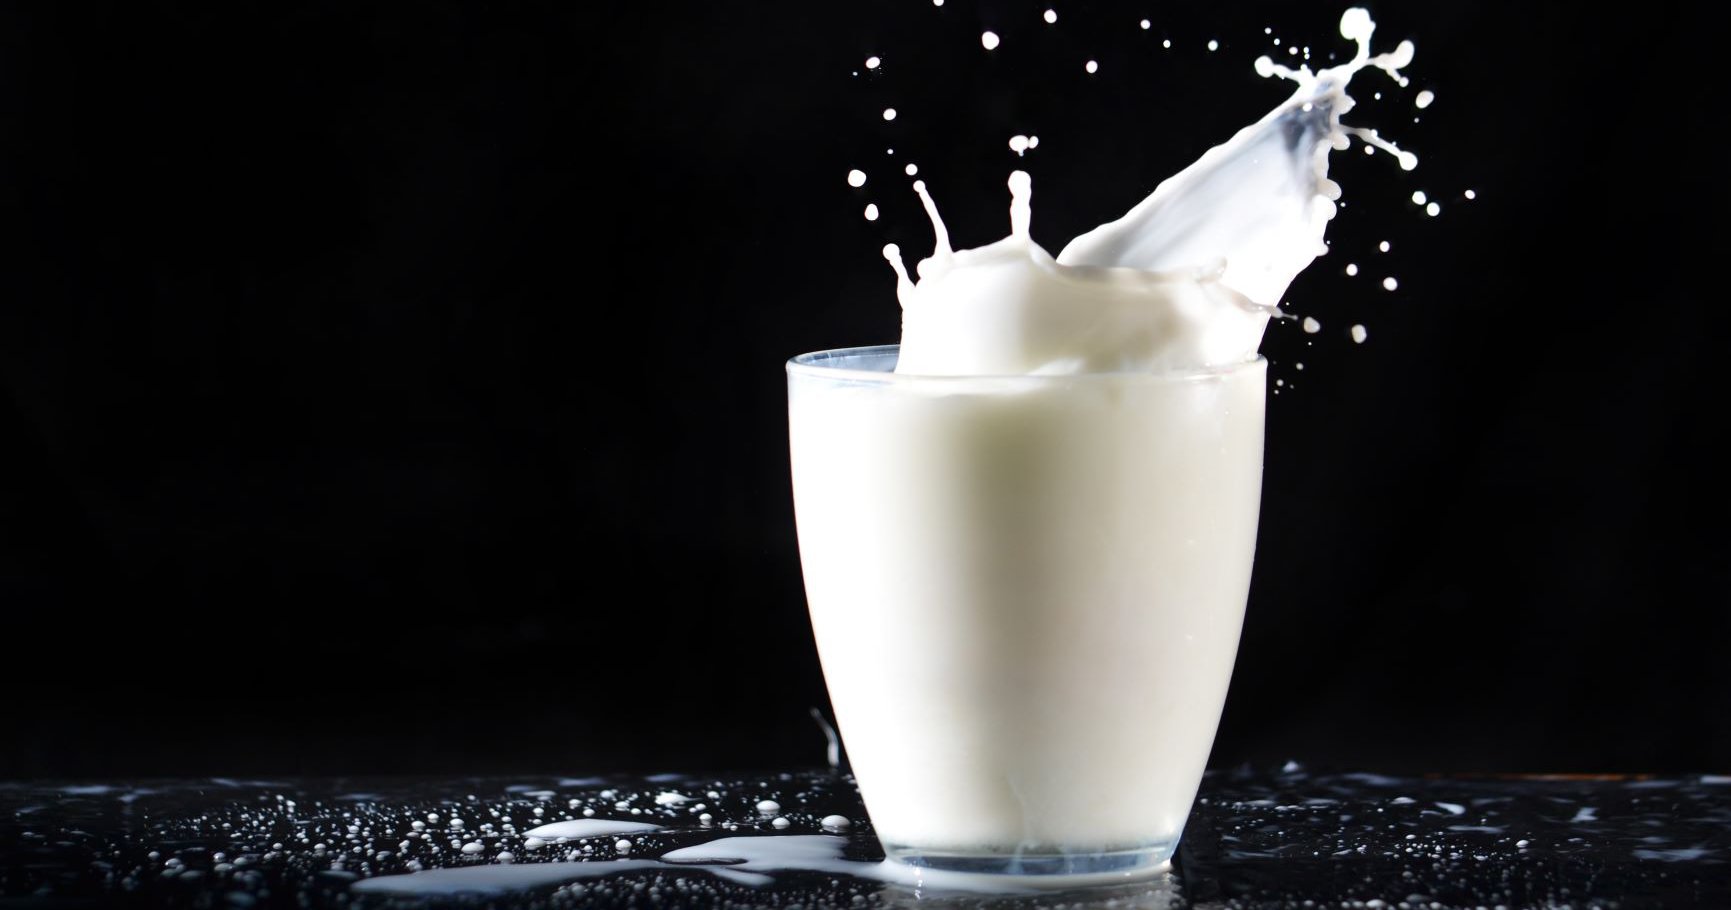 Farmacia Eva Cela - 🤱 La leche Almirón 2 es una leche adaptada formulada  por expertos de forma que aporte una nutrición completa y equilibrada a los  pequeños desde los 6 meses. ¡